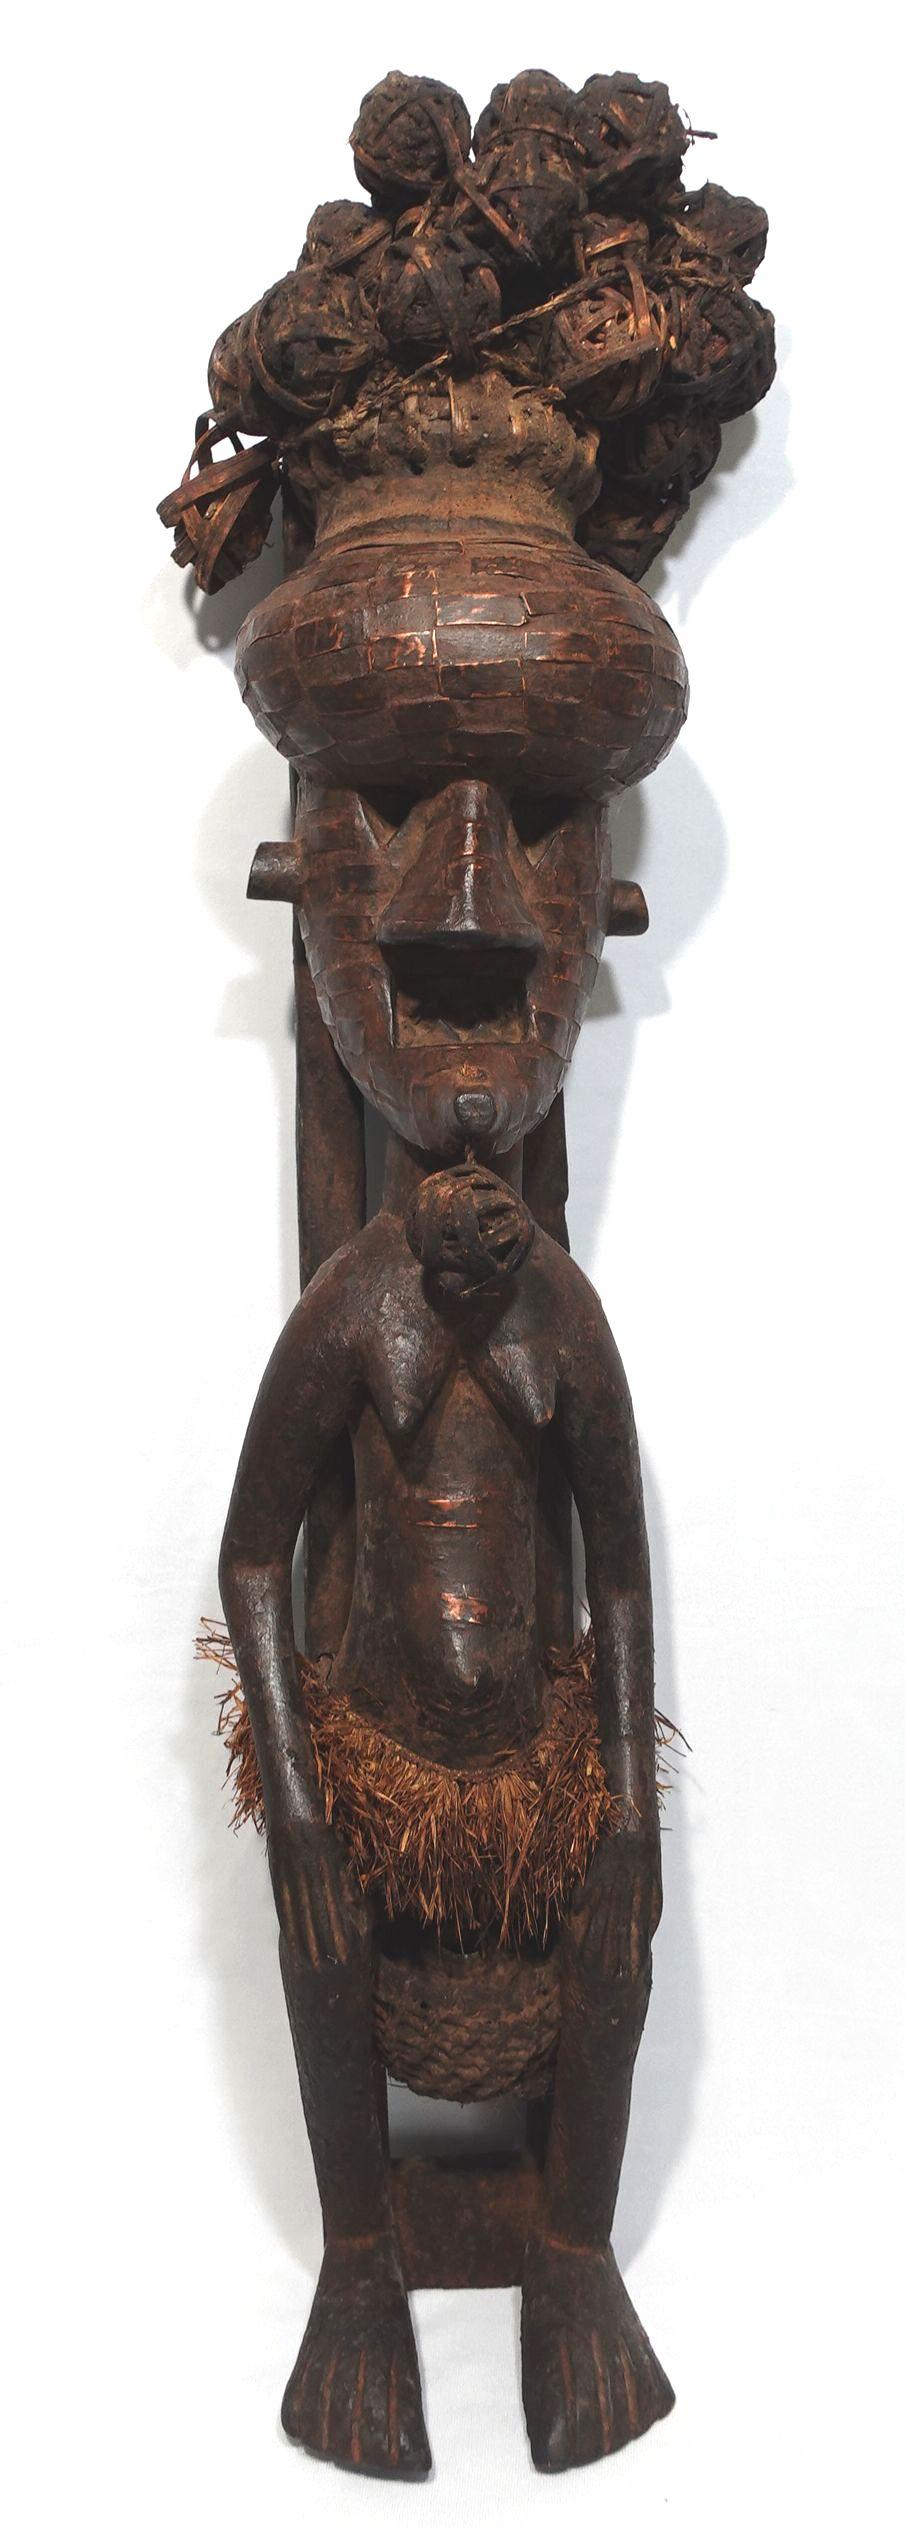 Eine kostbare afrikanische Kunststatue mit Ofenkugeln als Haare, Korbgeflechtstruktur im Gesicht und einem Lendentuch. Die Messingplatten sind auf dem gesamten Kopf und Gesicht sowie teilweise auf dem Körper angebracht. Die Statue ist eine sehr